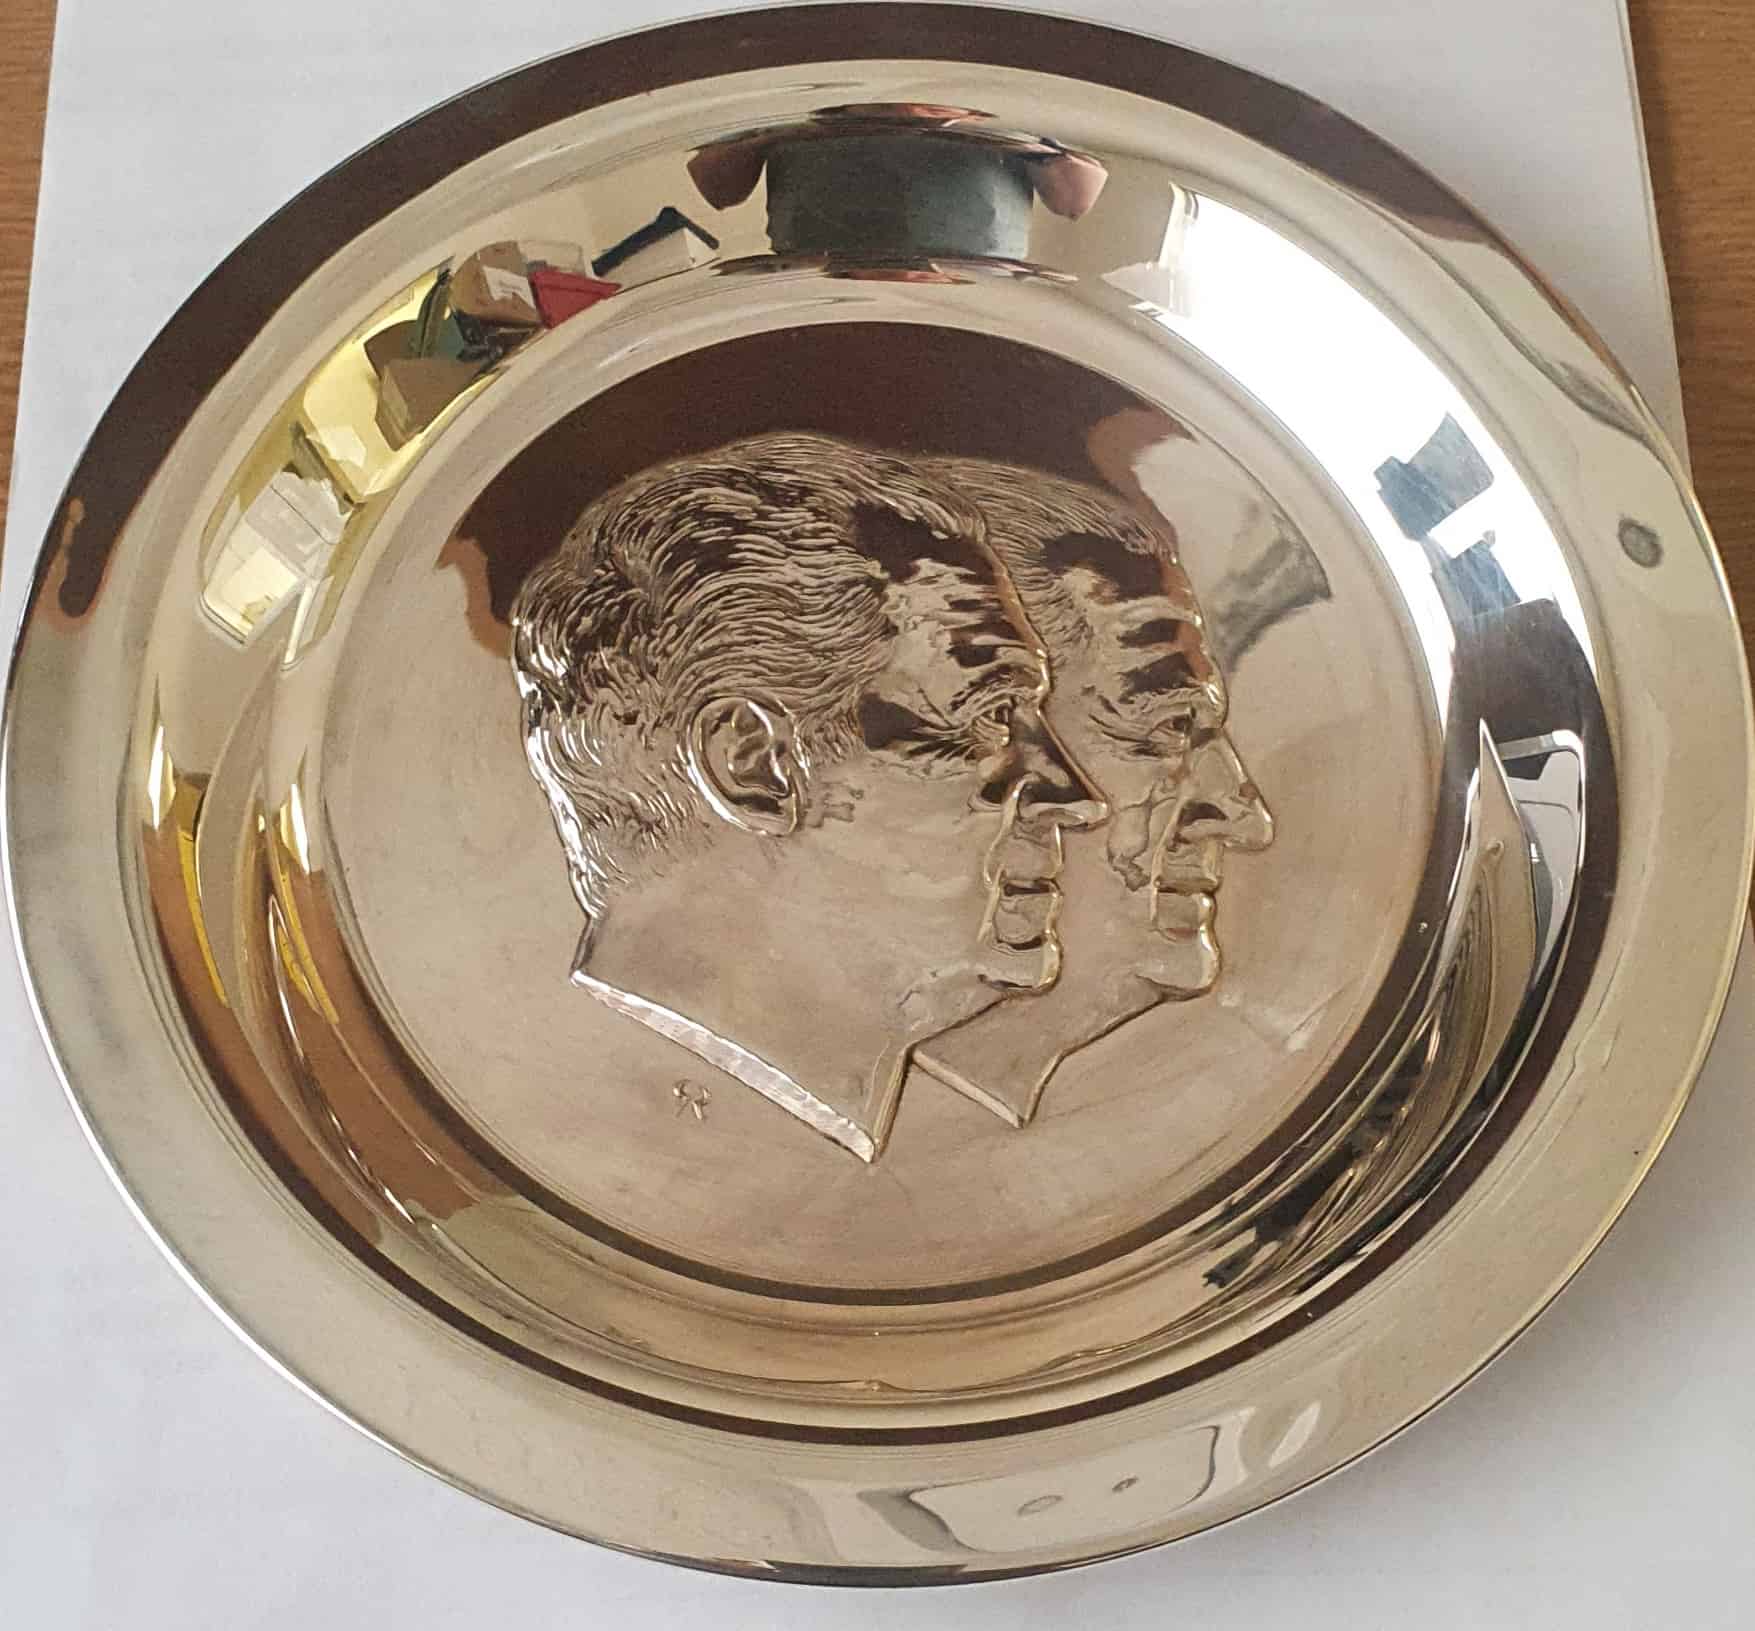 Silver inauguration plate for Nixon.